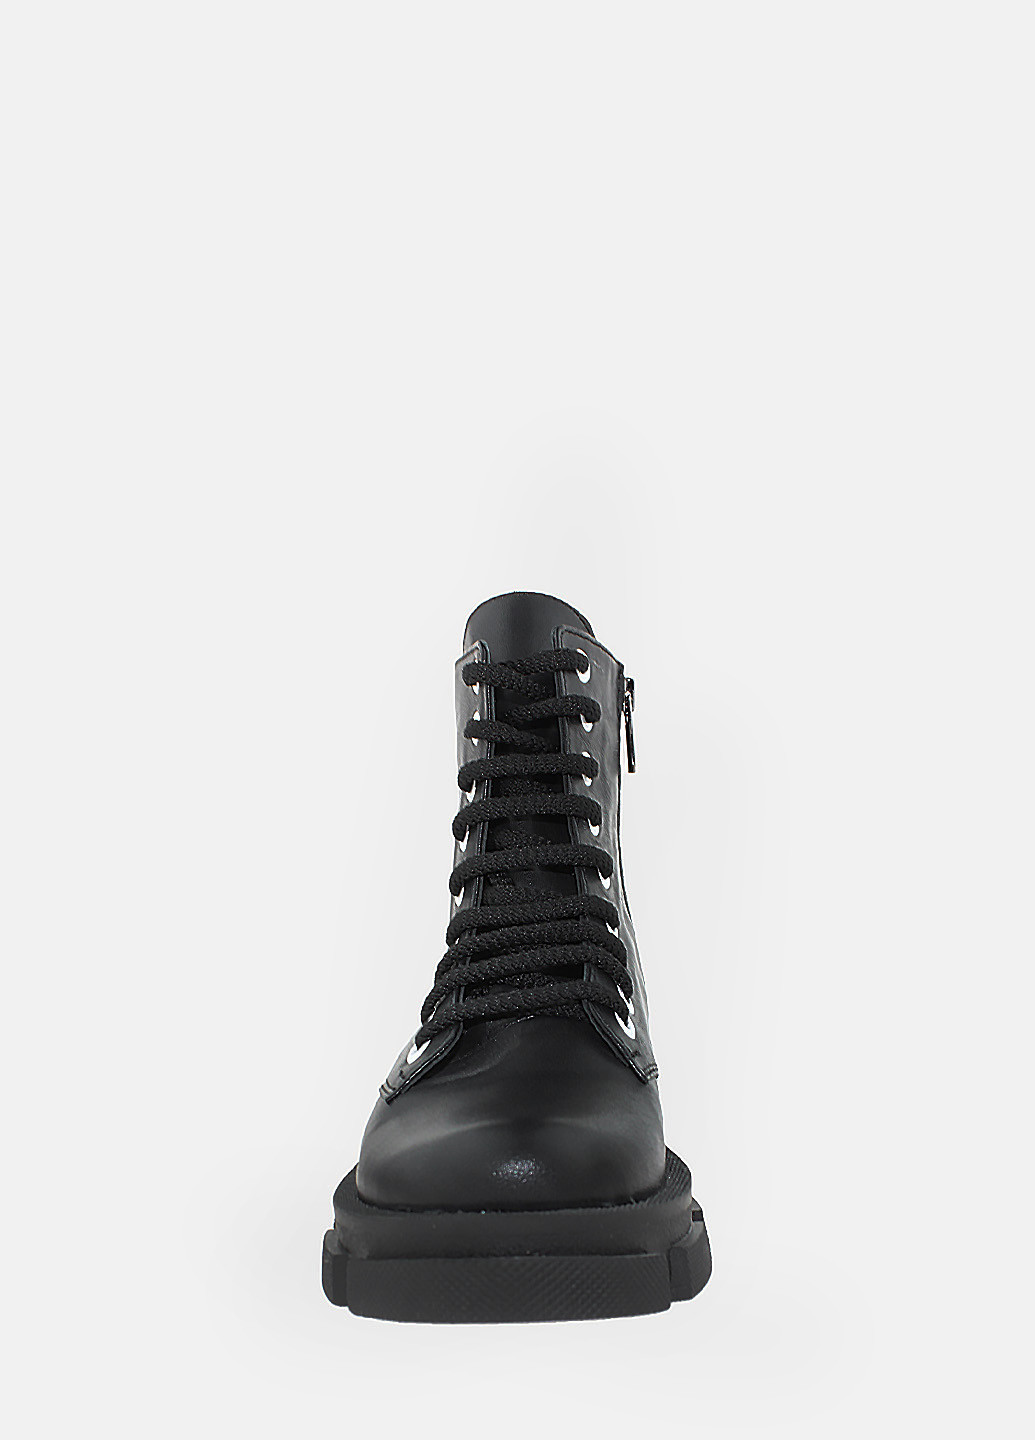 Осенние ботинки rb75212 черный Brionis